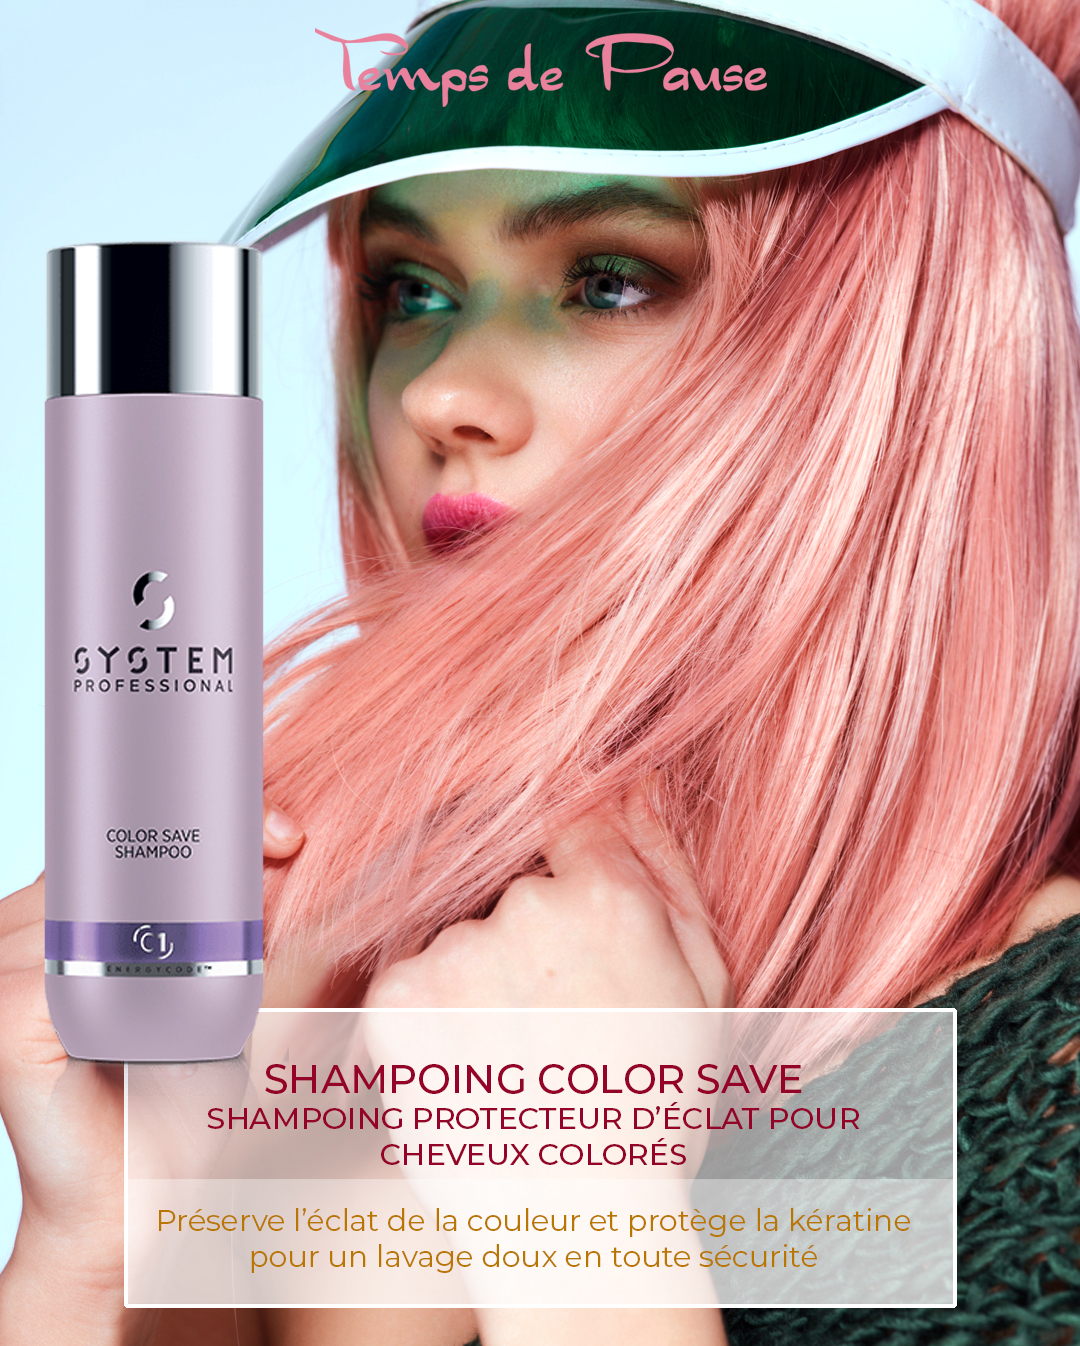 SHAMPOING COLOR SAVE, Shampoing protecteur d'éclat pour cheveux colorés